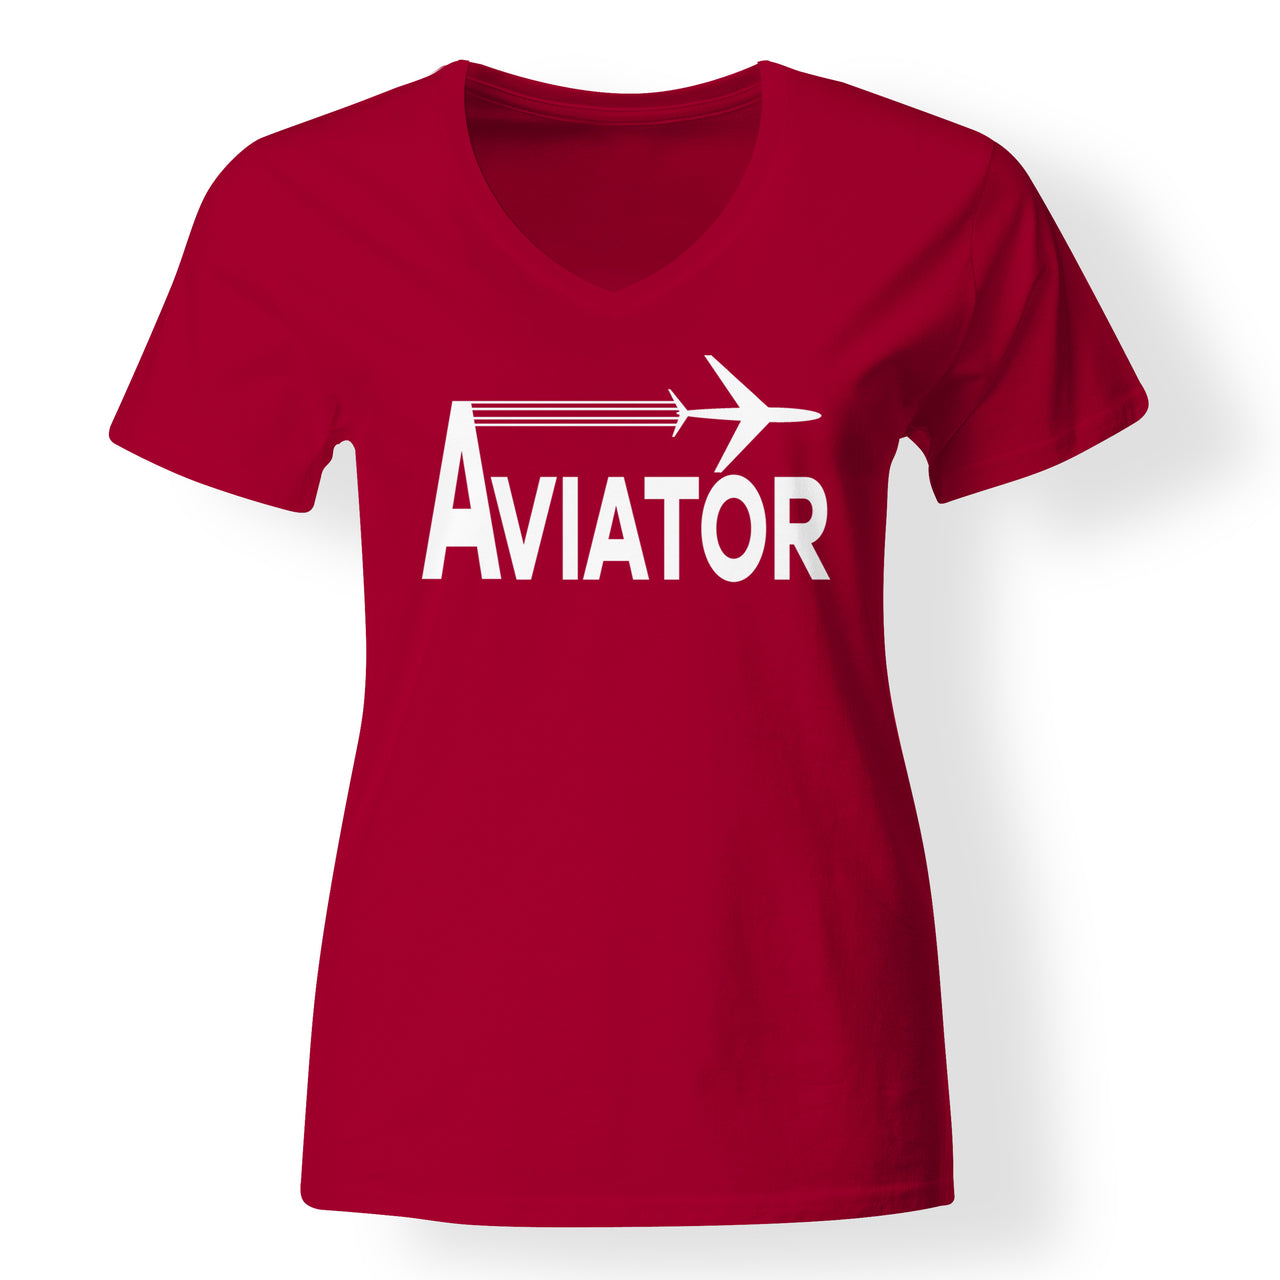 Aviator Designed V-Neck T-Shirts